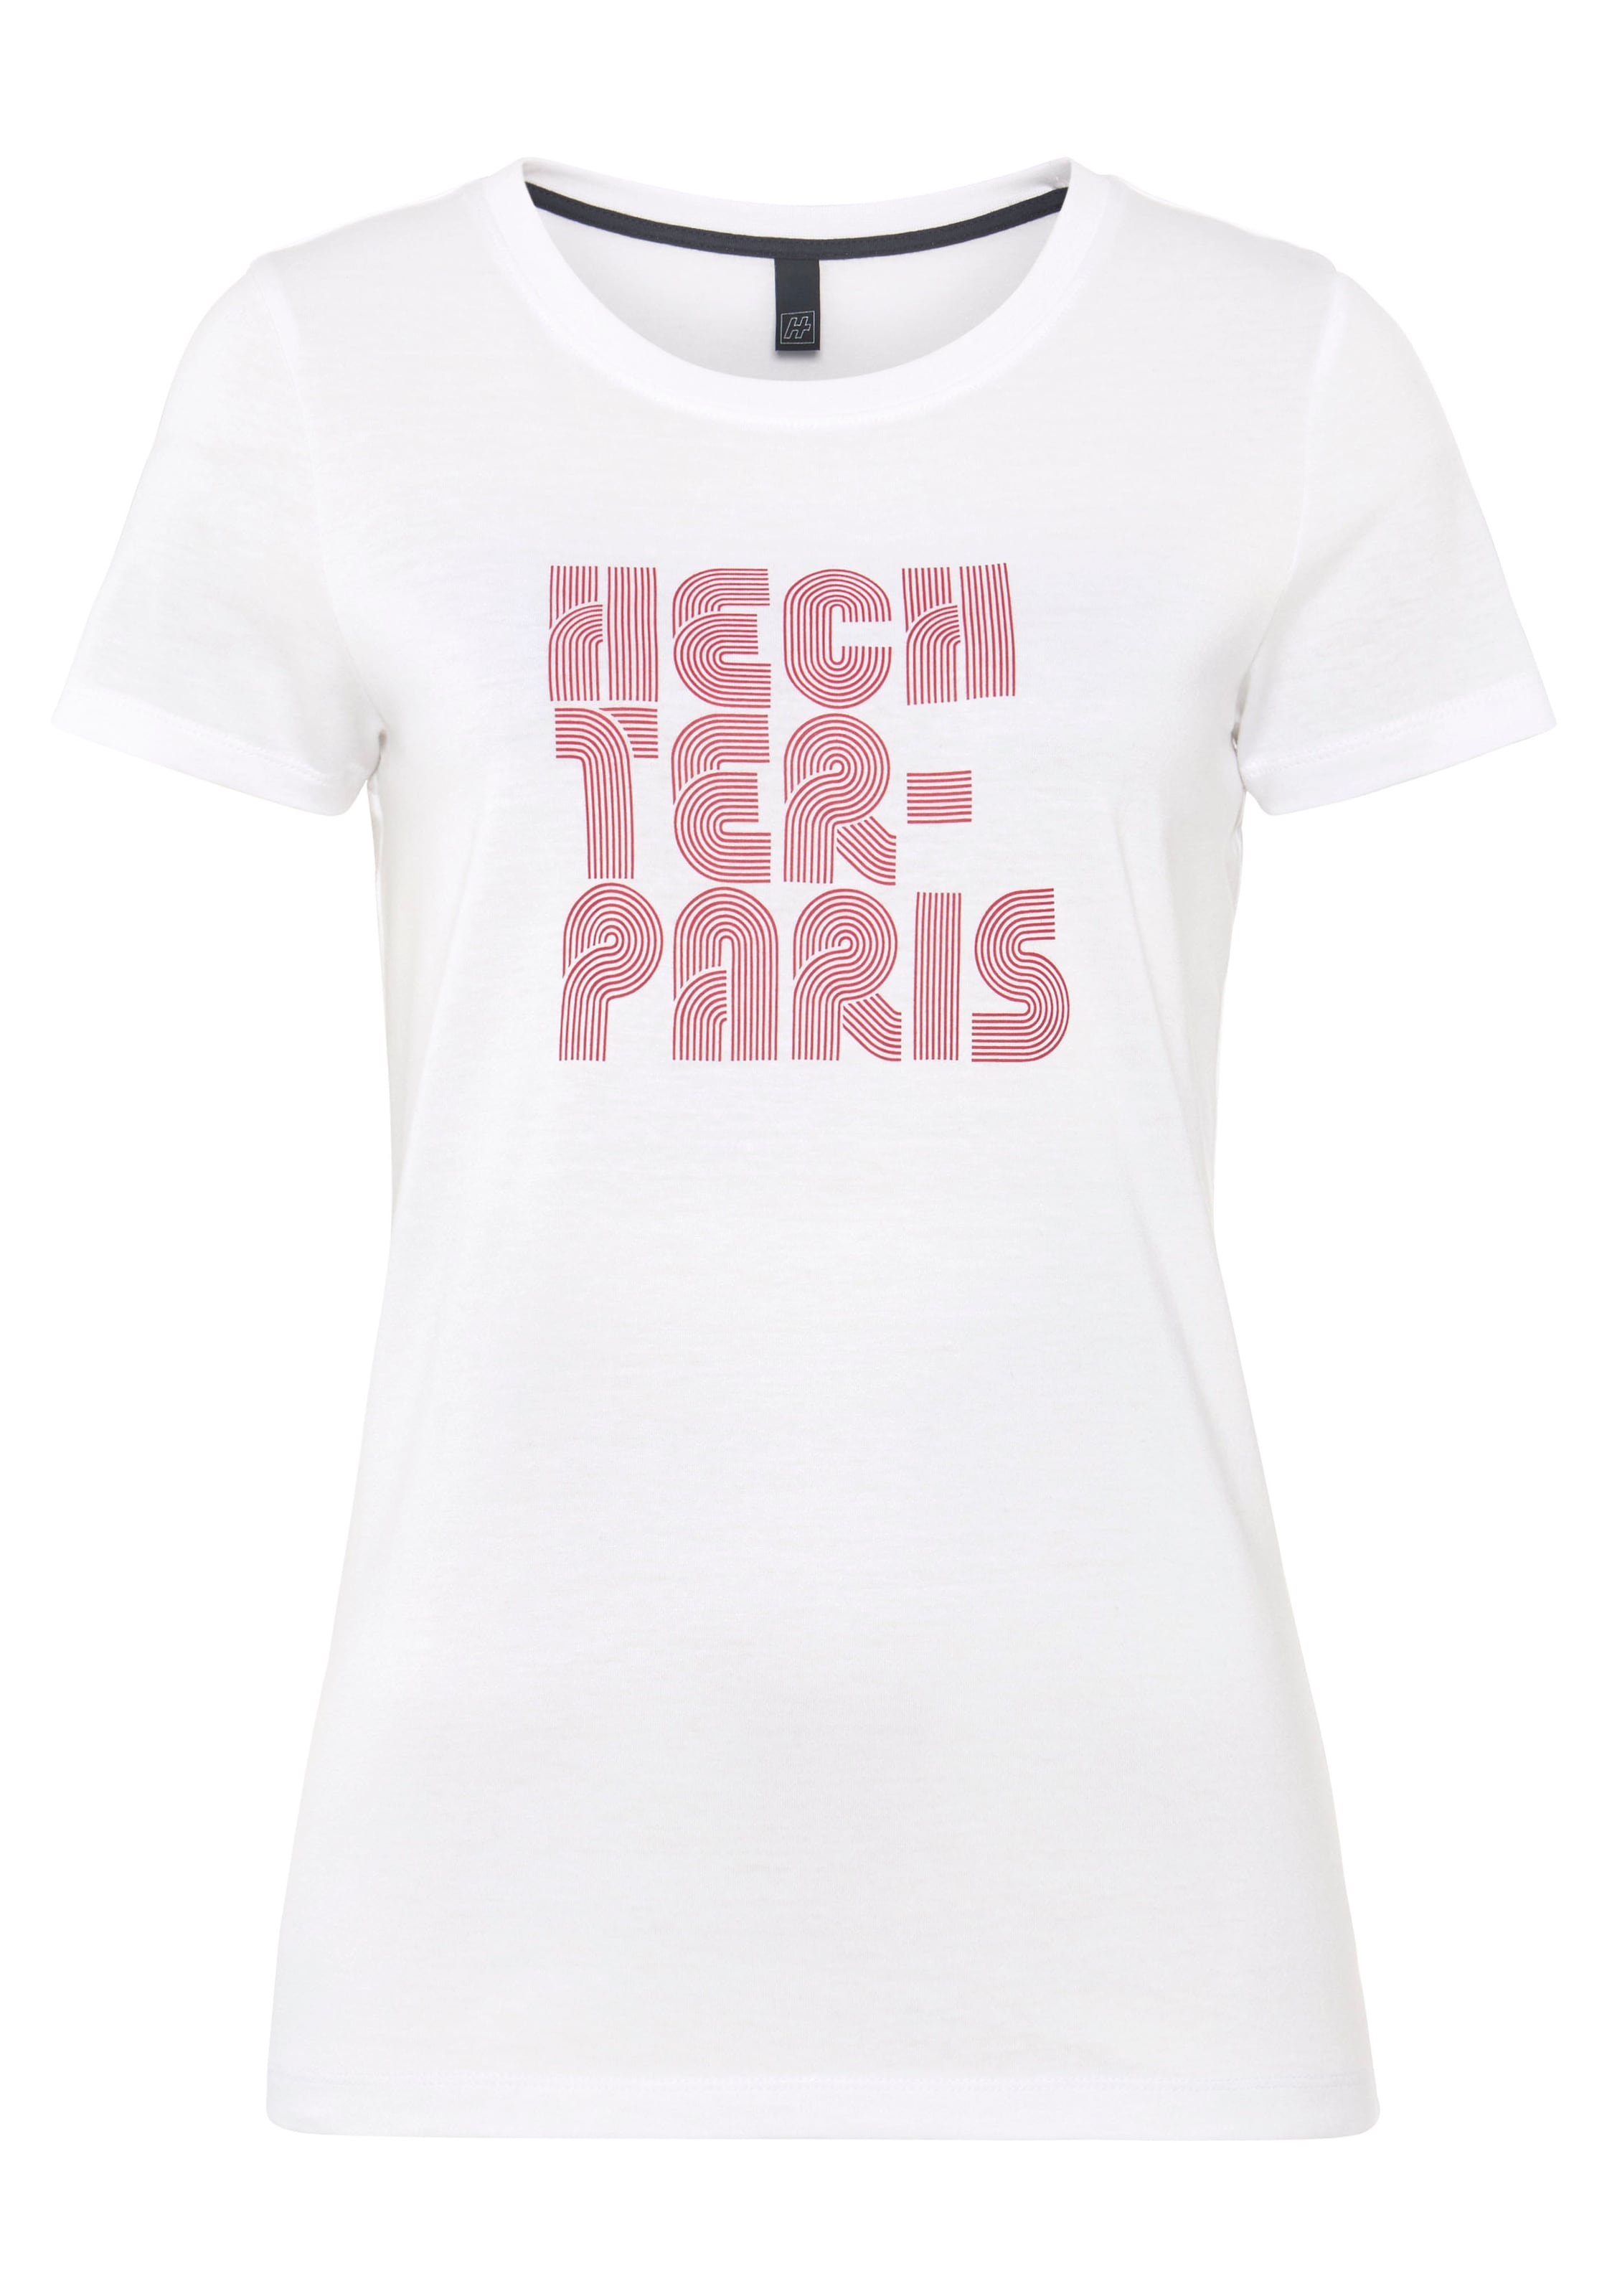 HECHTER PARIS T-Shirt, walking mit kaufen | Druck I\'m